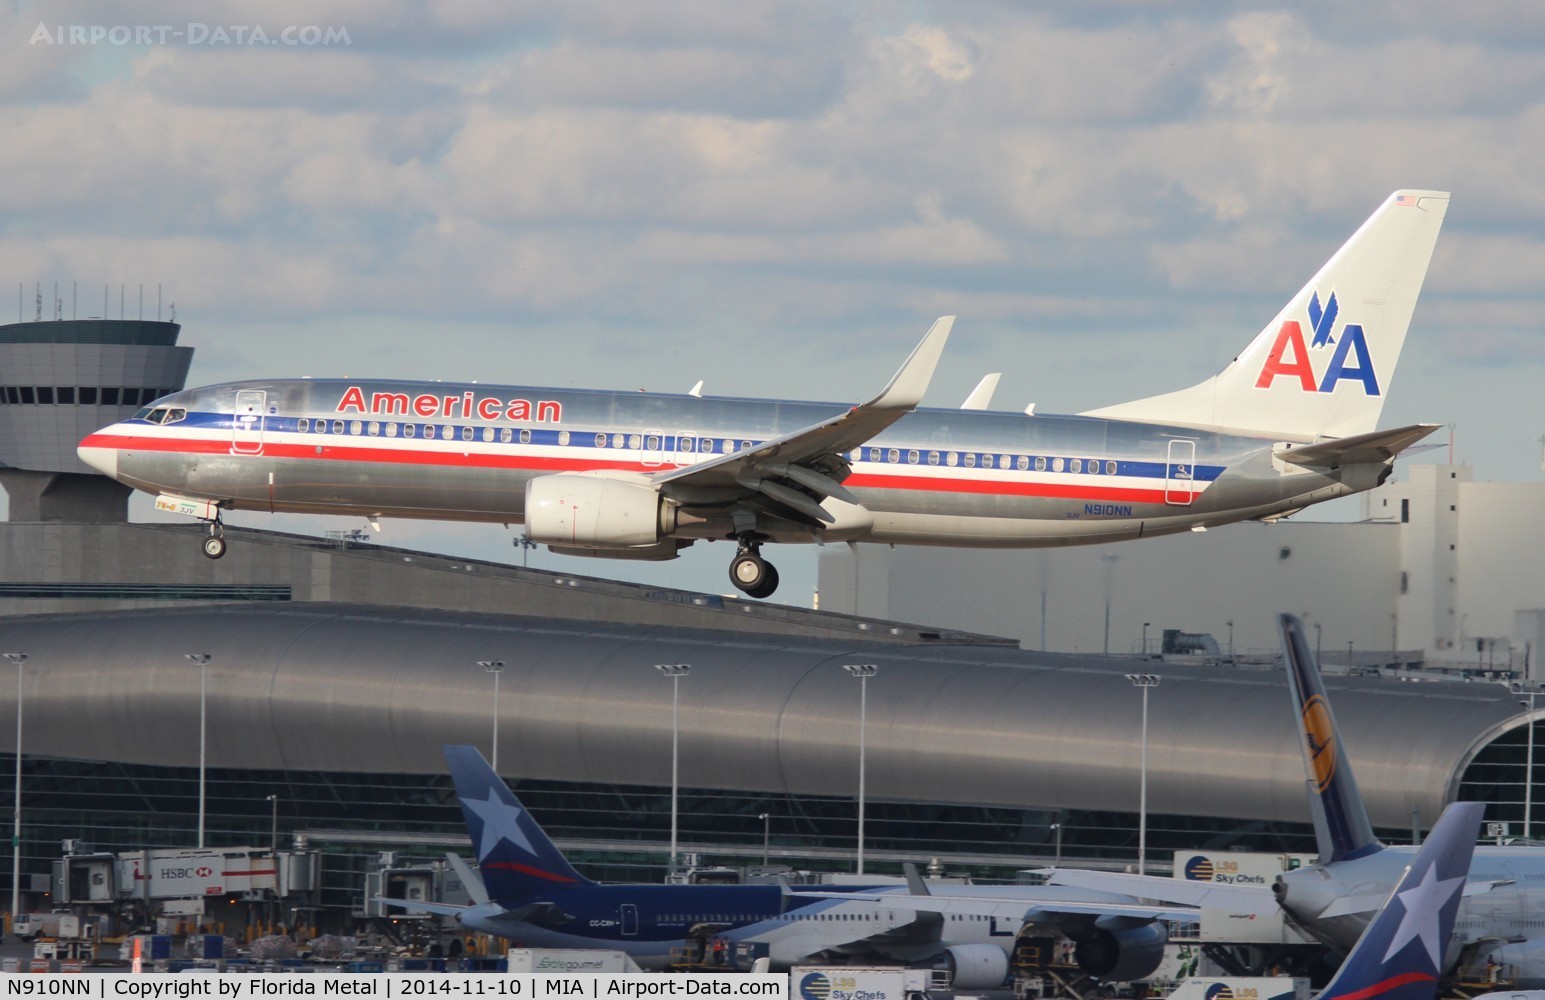 N910NN, 2012 Boeing 737-823 C/N 31160, American